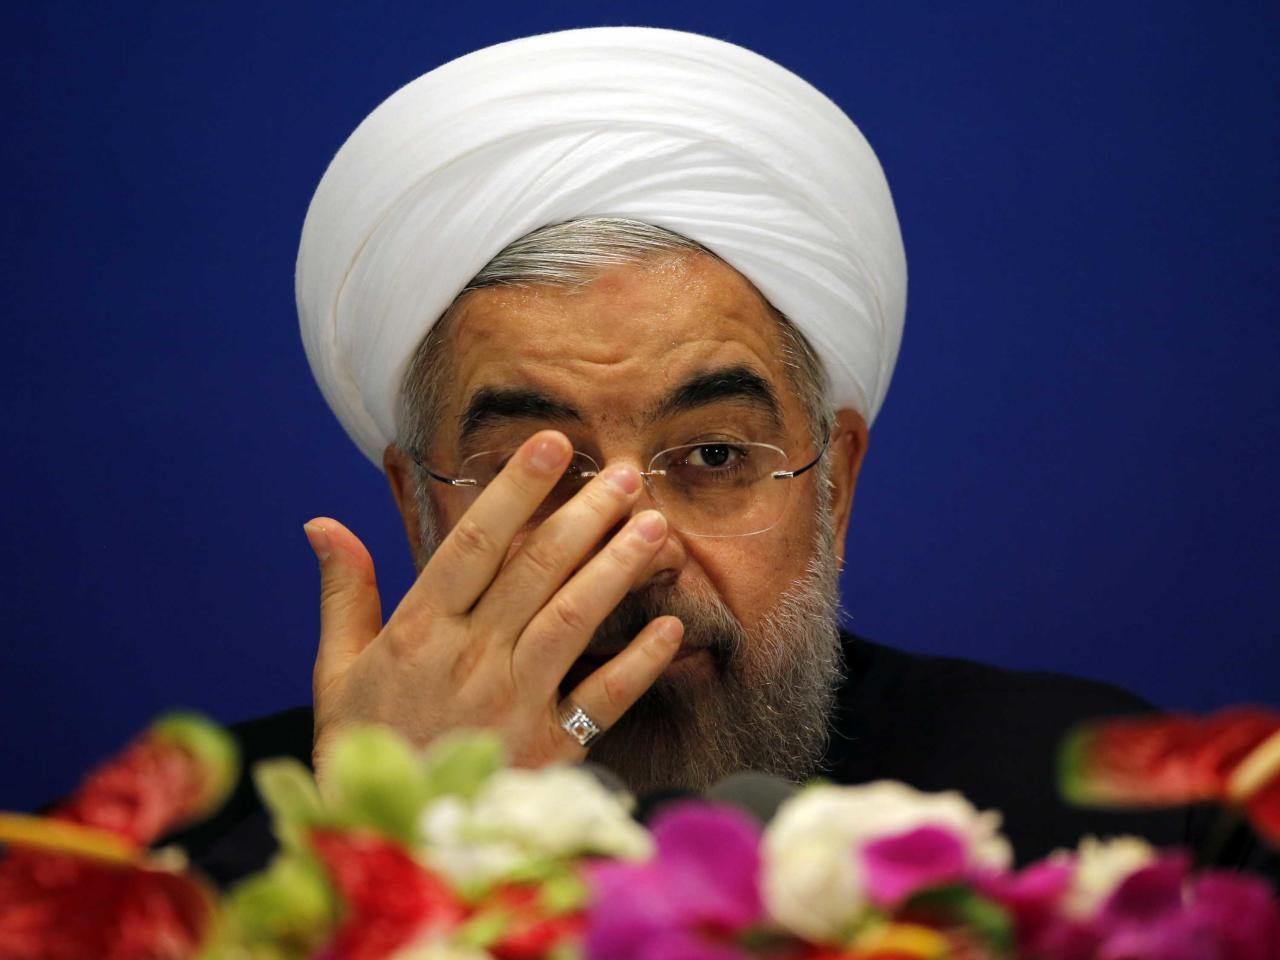 روحاني يلغي زيارته إلى النمسا "لأسباب أمنية"